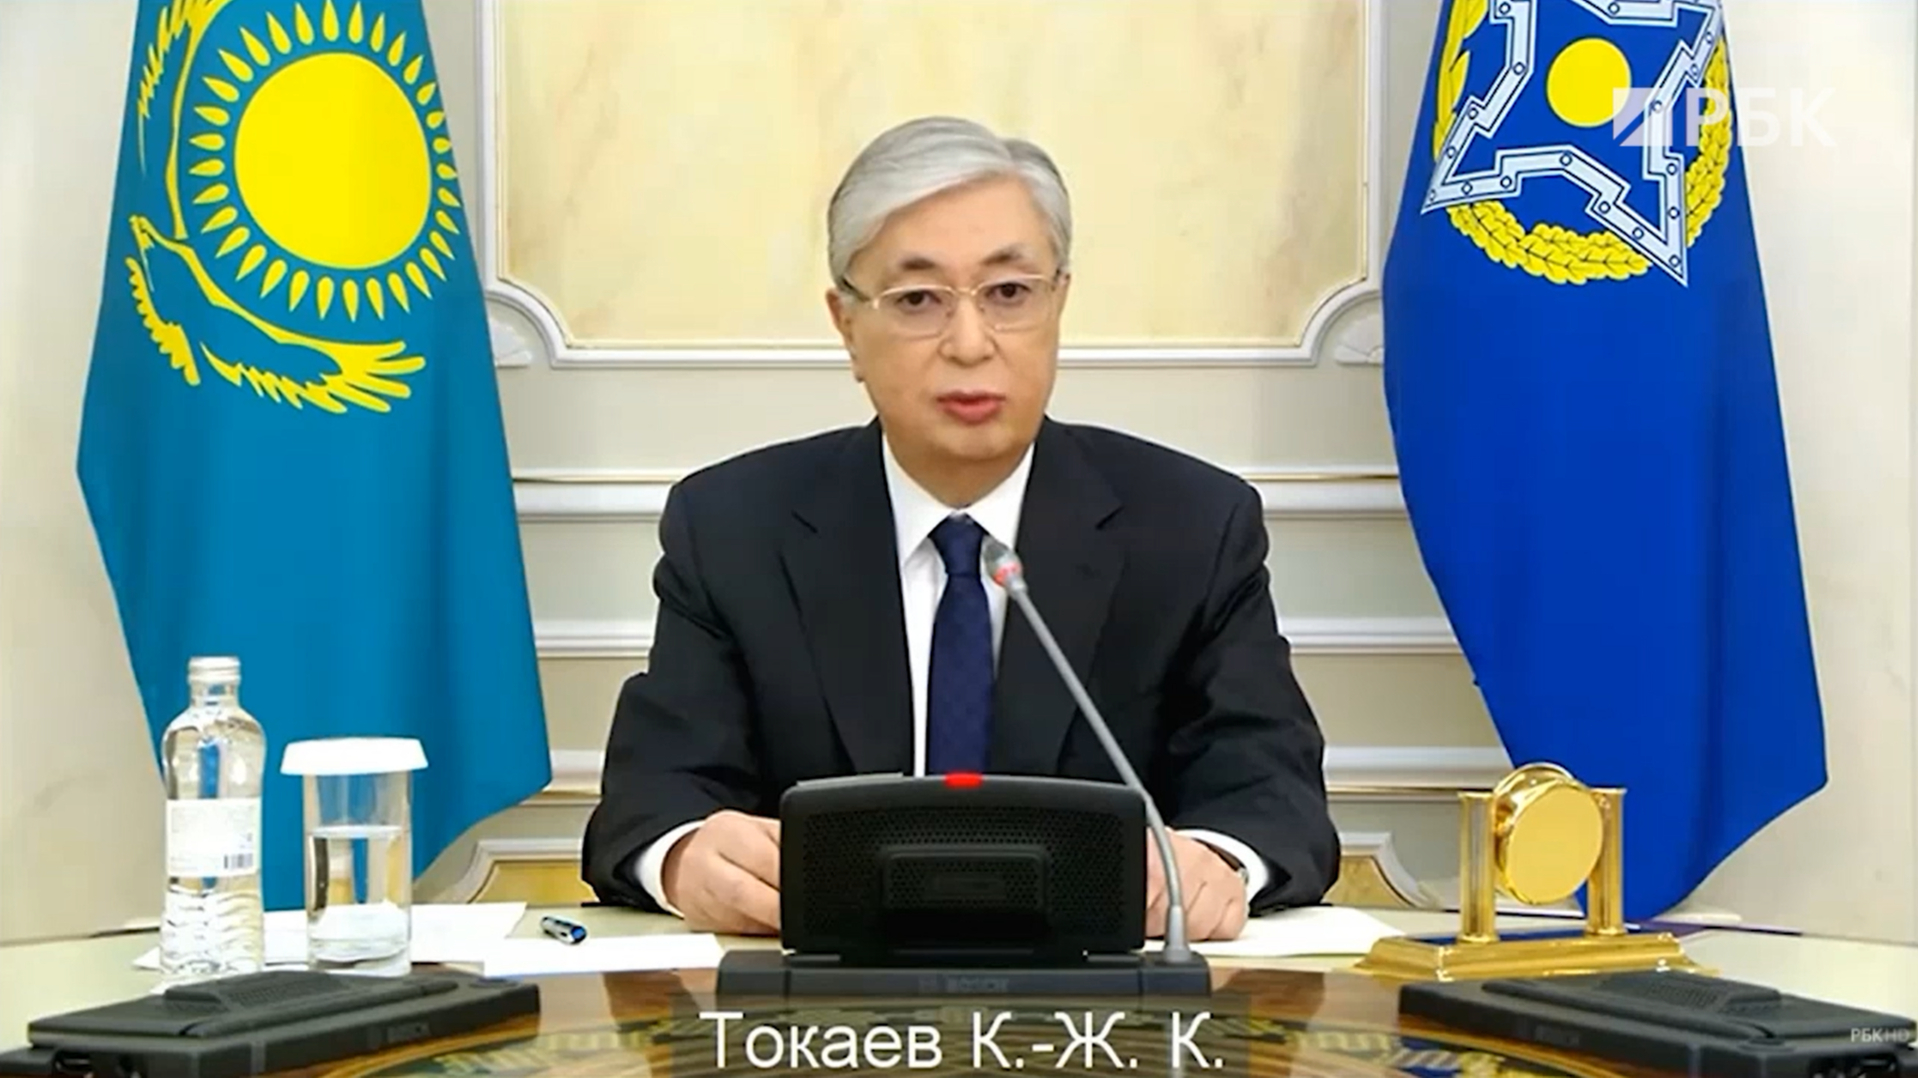 Токаев описал произошедшее в Казахстане как «Алма-Атинскую трагедию»"/>













